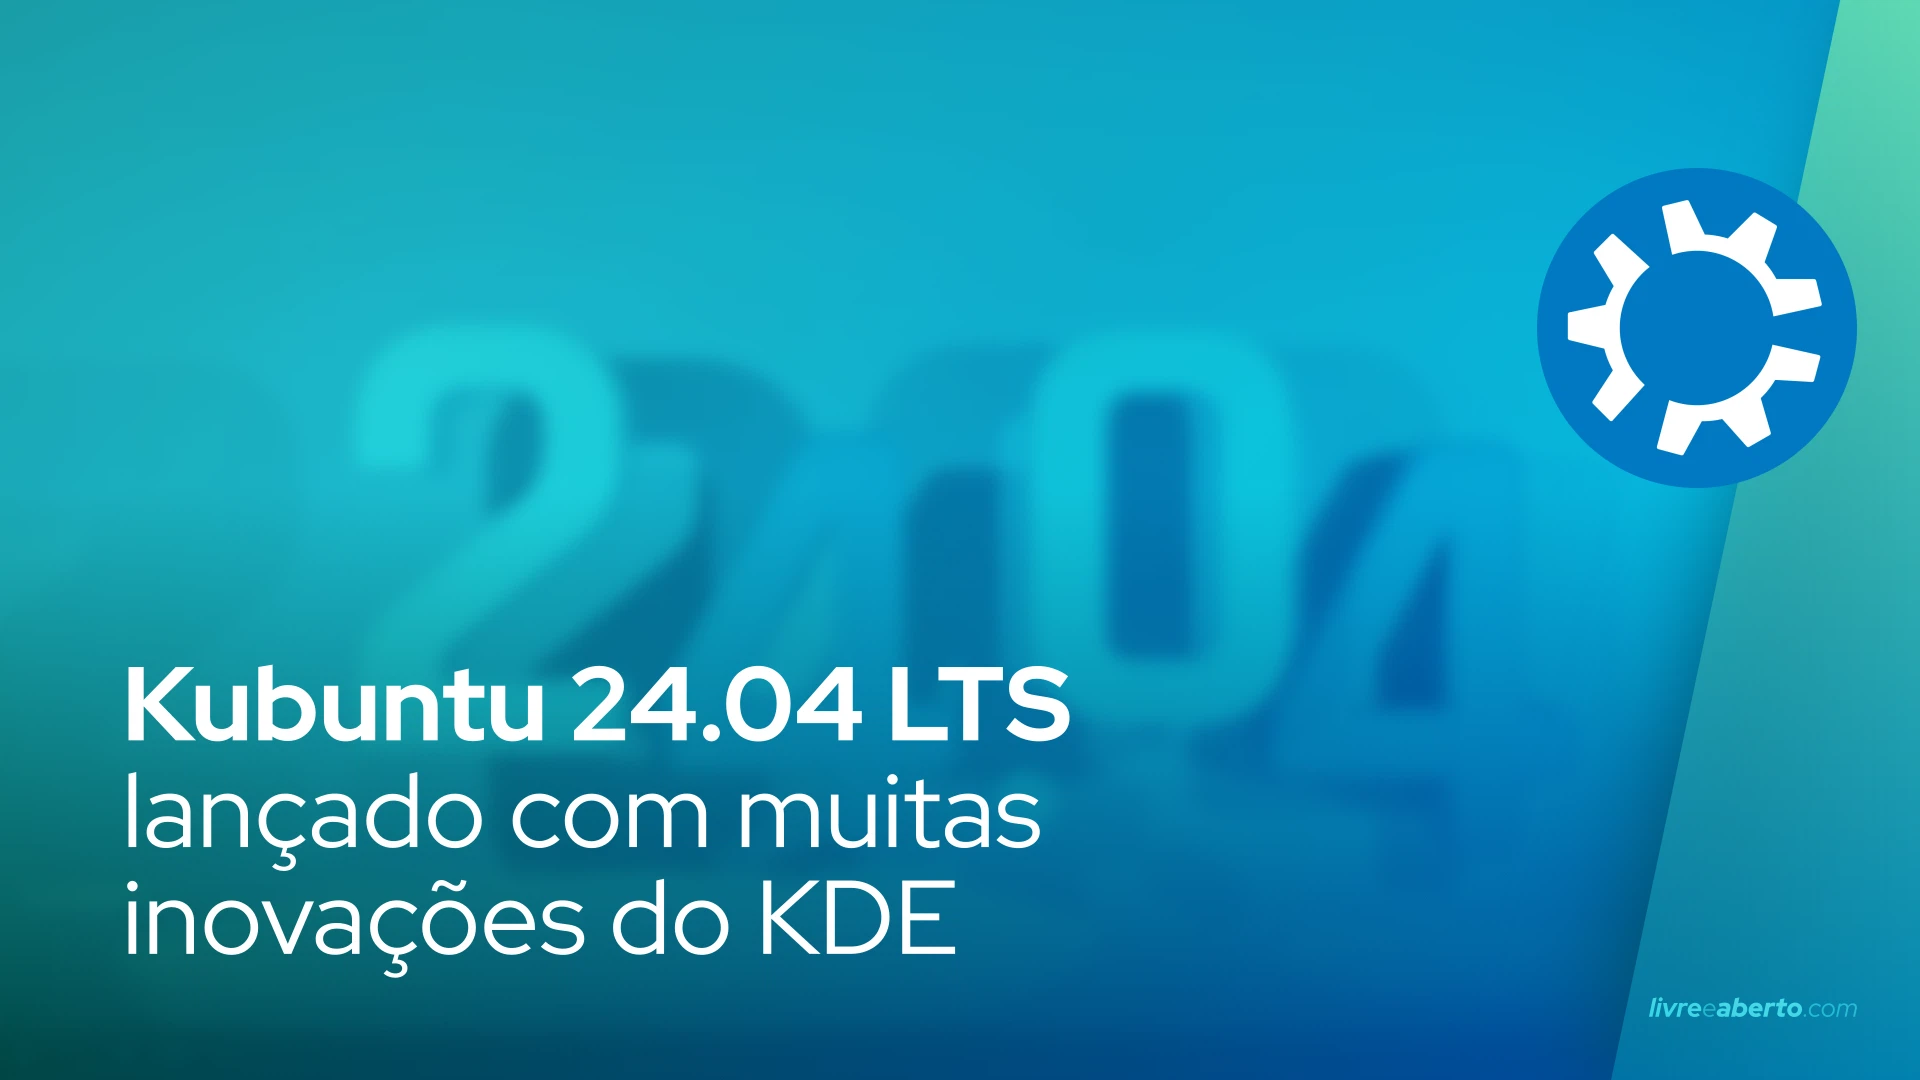 Kubuntu 24.04 LTS lançado com muitas inovações do KDE!